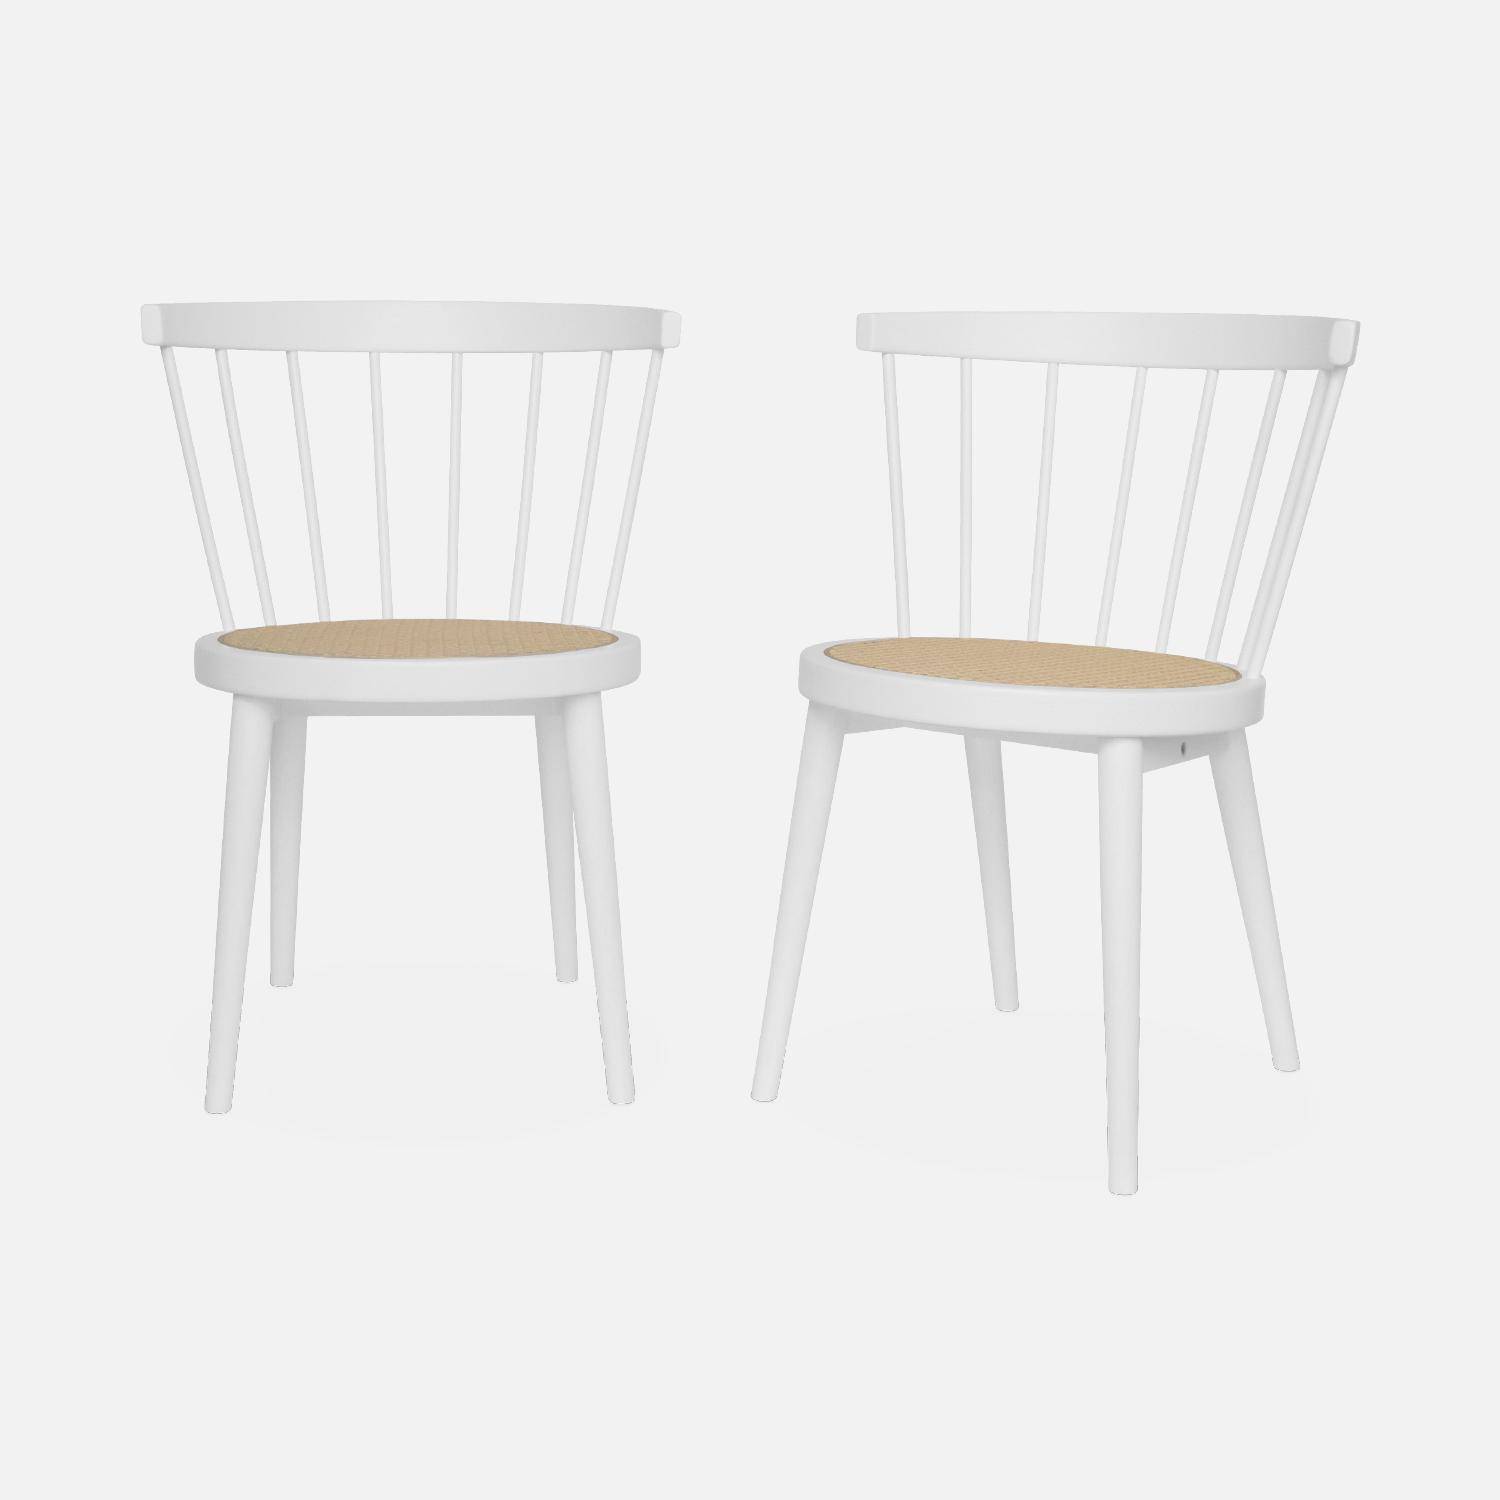 Lot de 2 chaises blanches en bois et cannage, Nora, L 54 x P 54 x H 76,5cm. Photo3